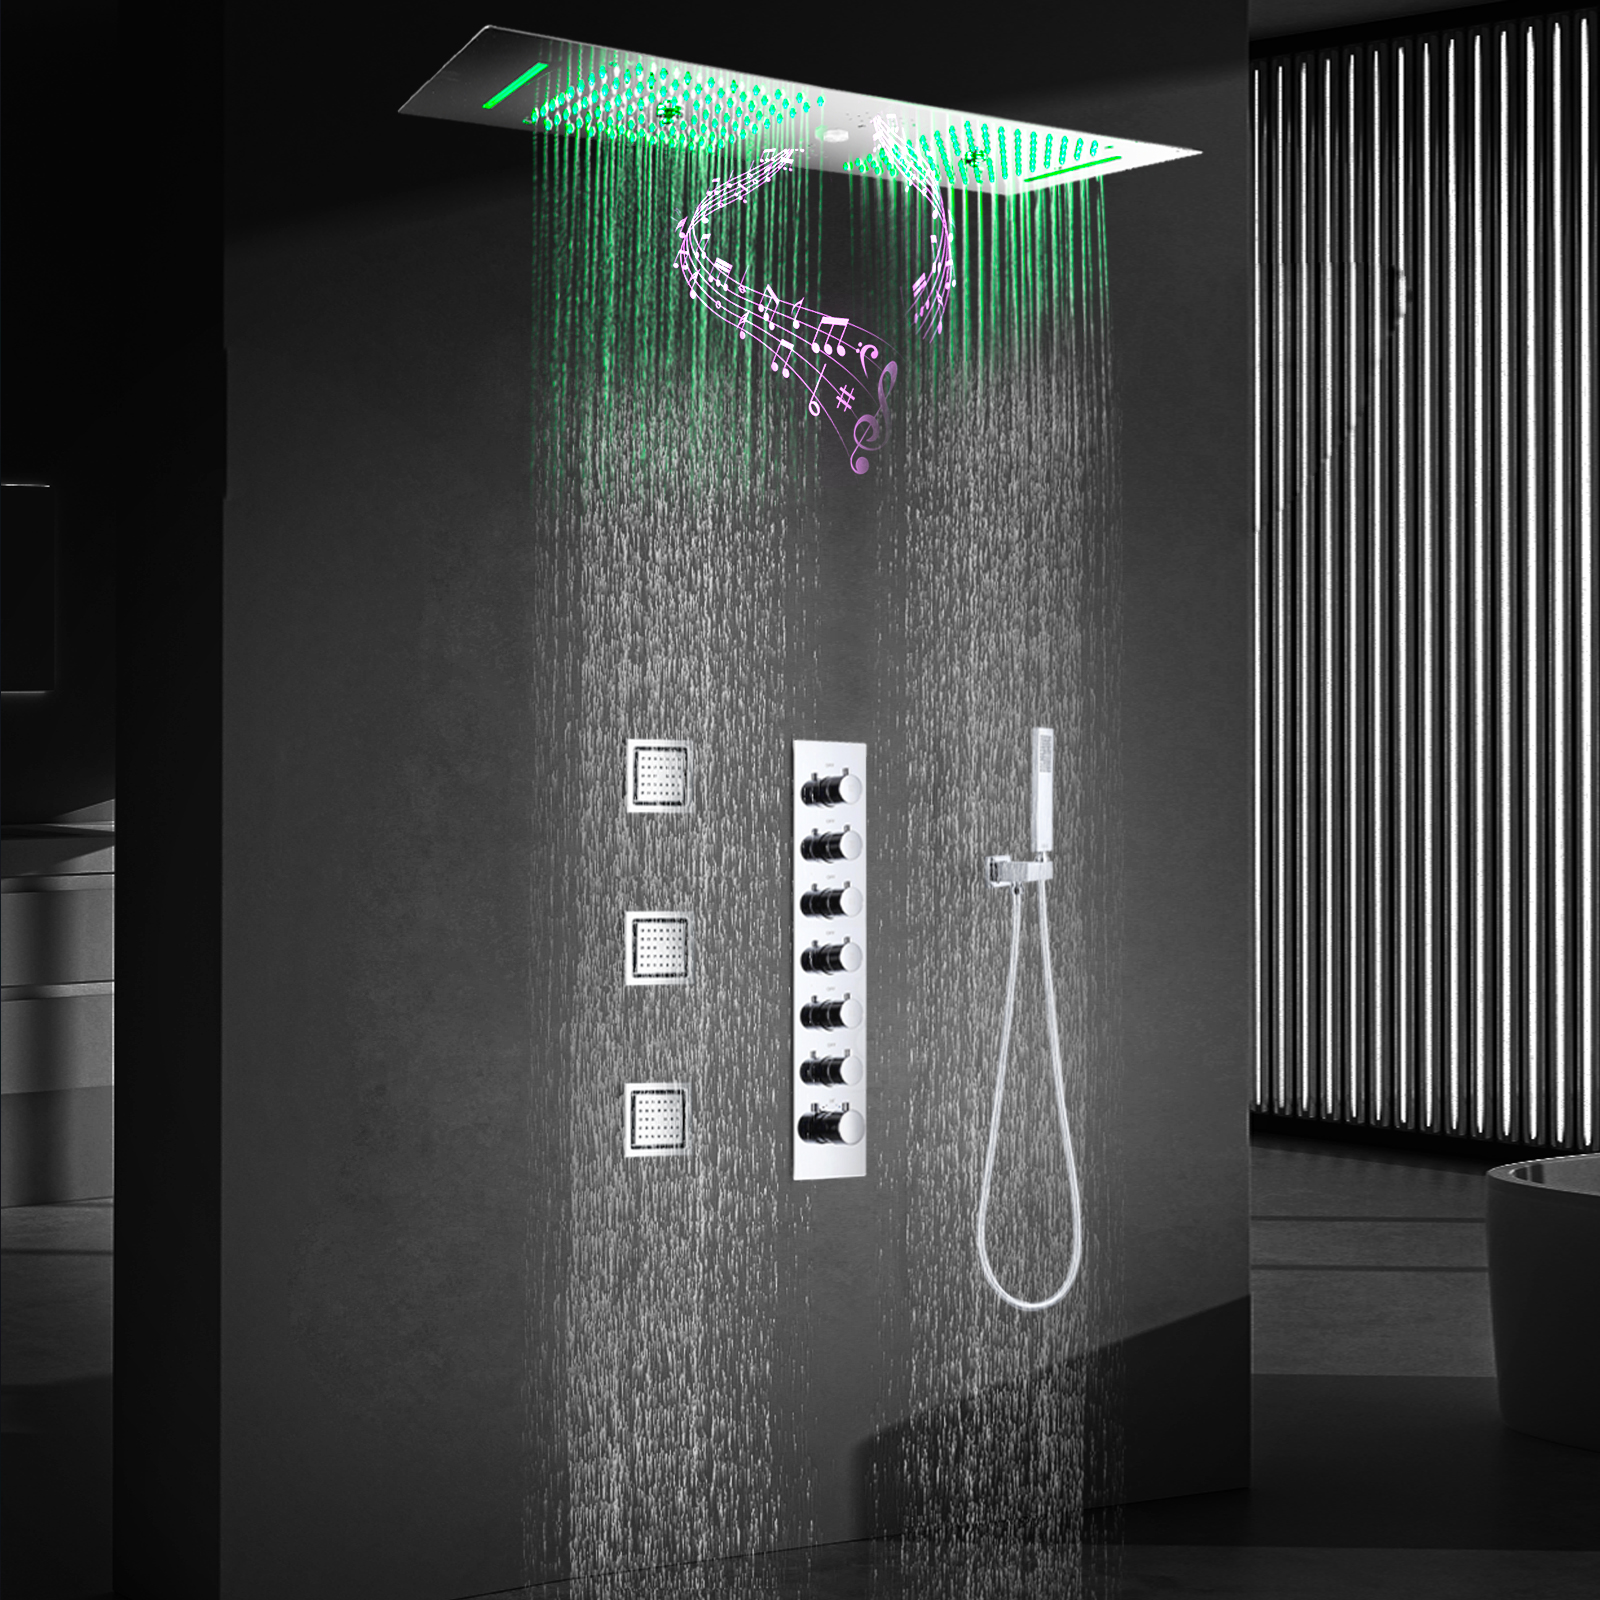 Cabezal de ducha LED cromado pulido con boquilla para grifo de lluvia, juego de grifo de ducha termostático empotrado en el techo para baño